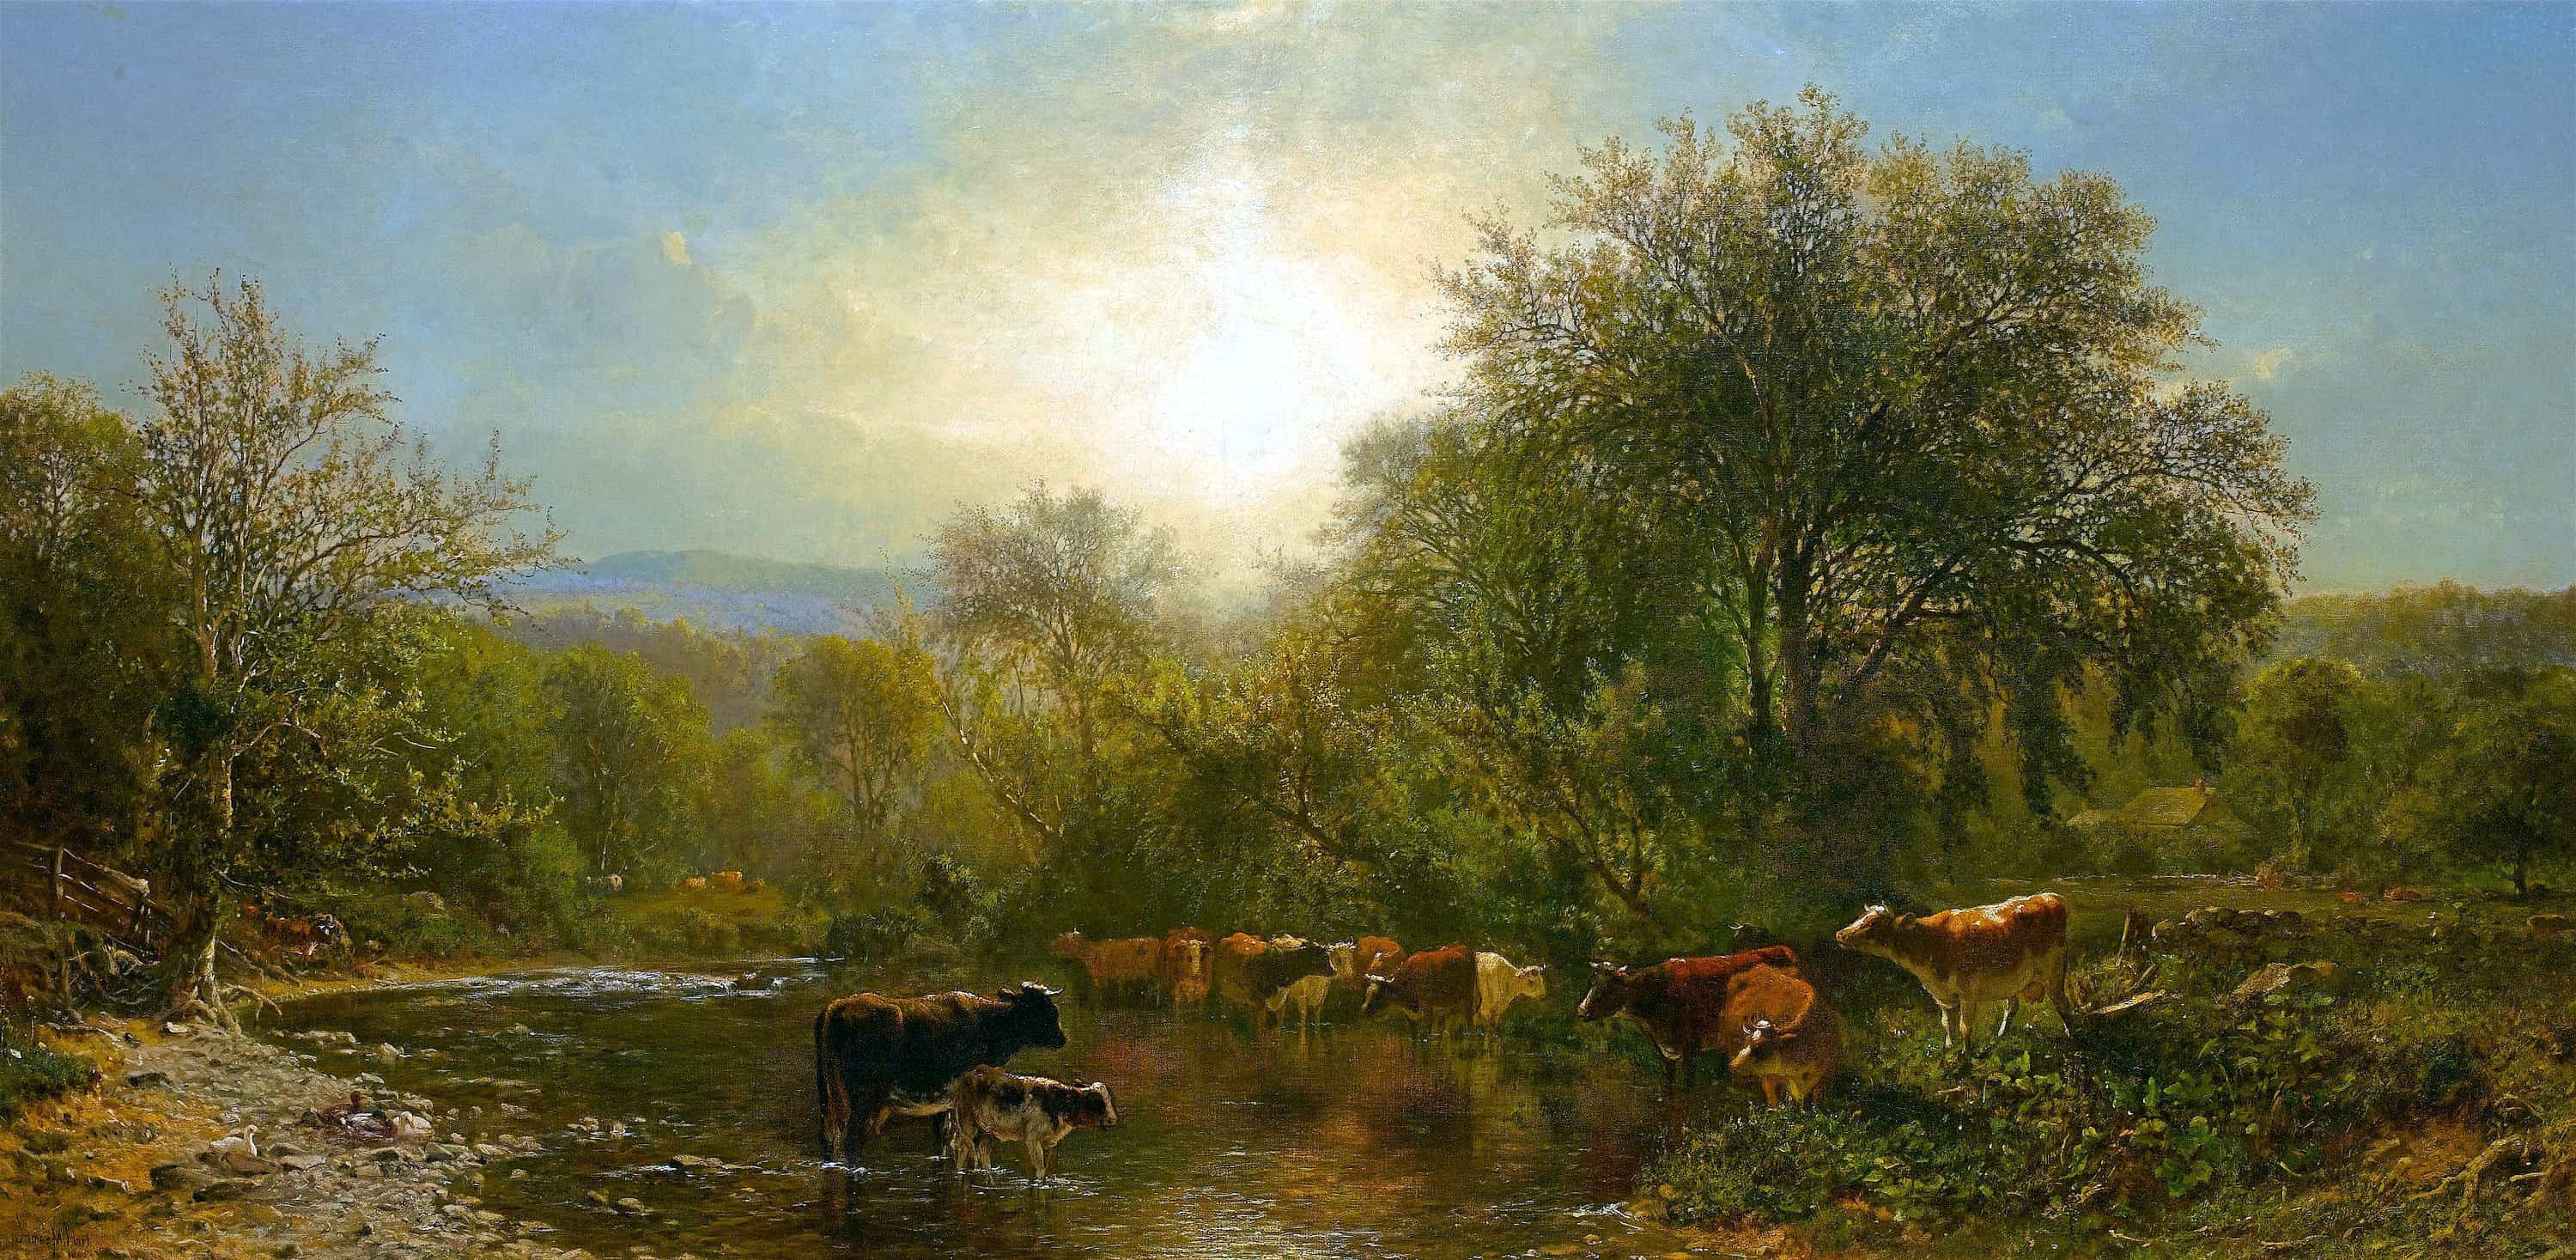 《水浴びする牛》 ジェームズ・マクドゥーガル・ハート 1865年